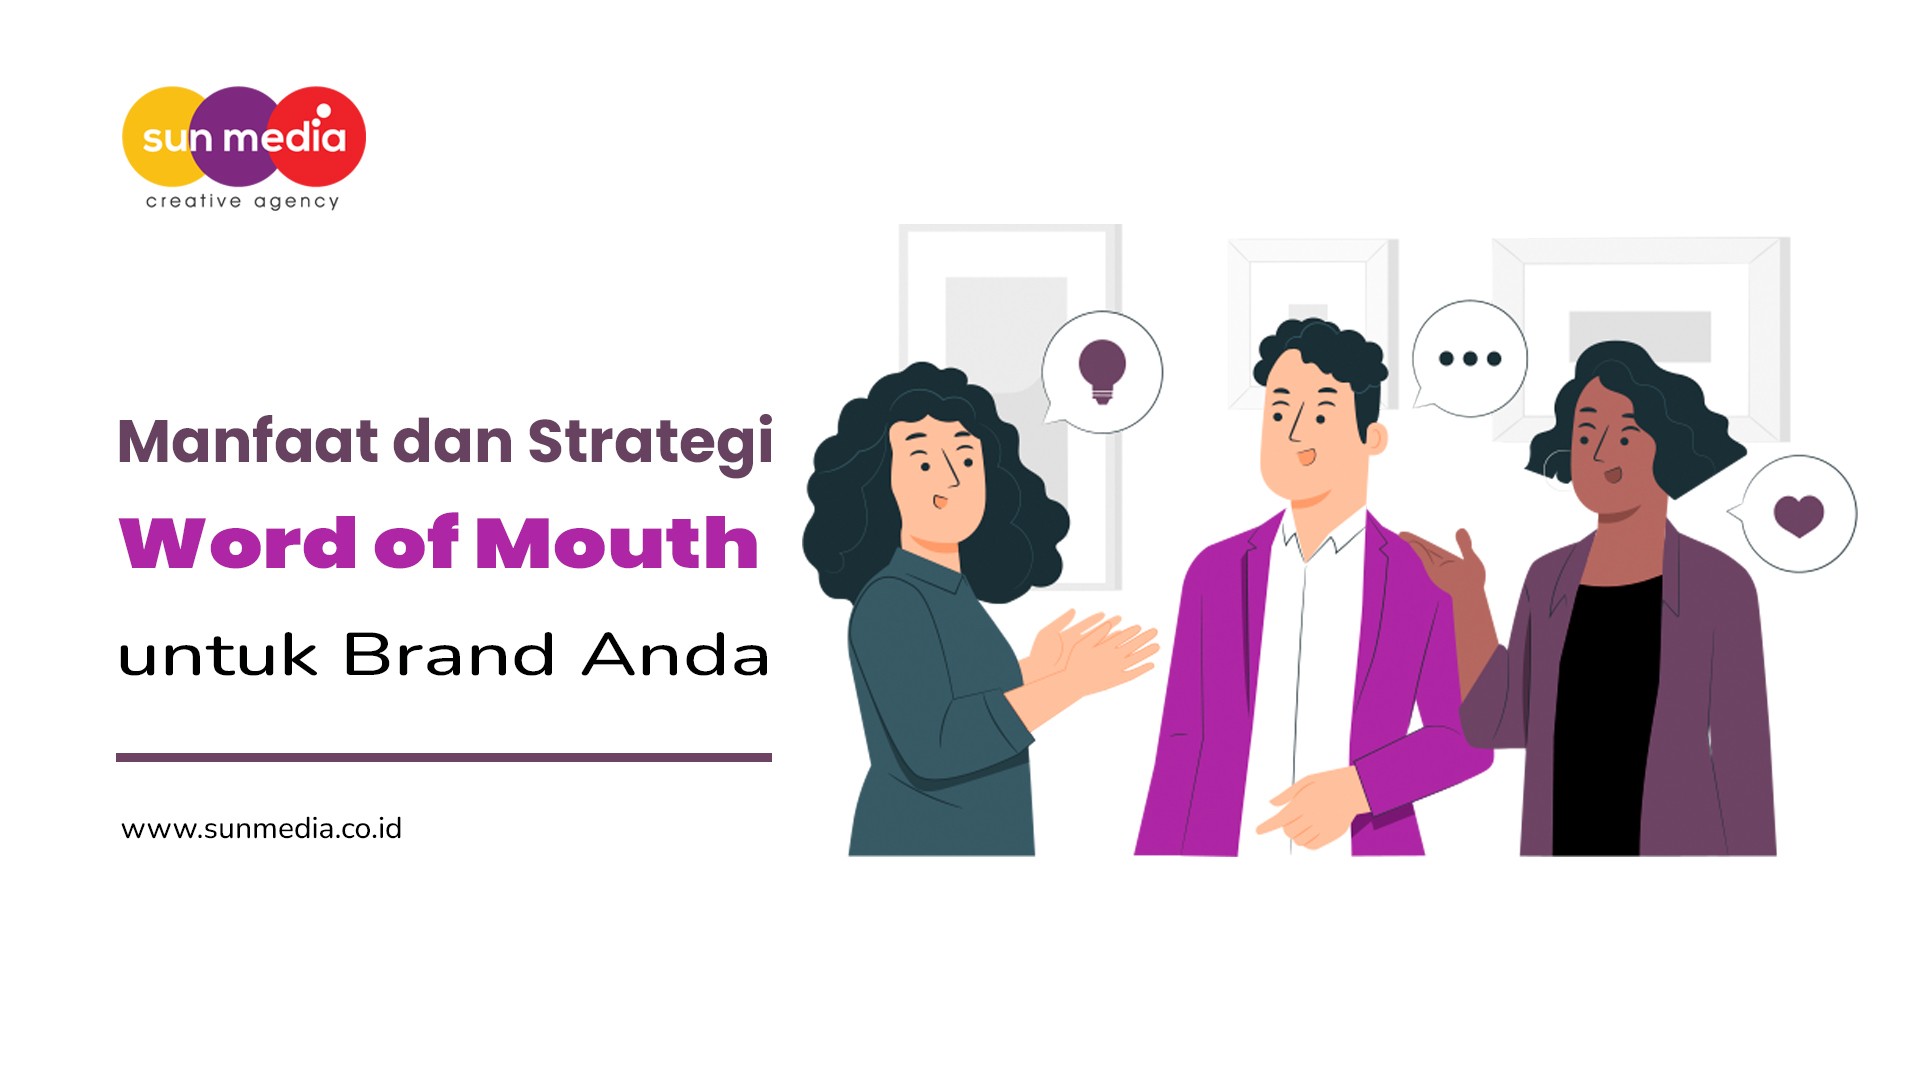 Manfaat dan Strategi Word of Mouth untuk Brand Anda